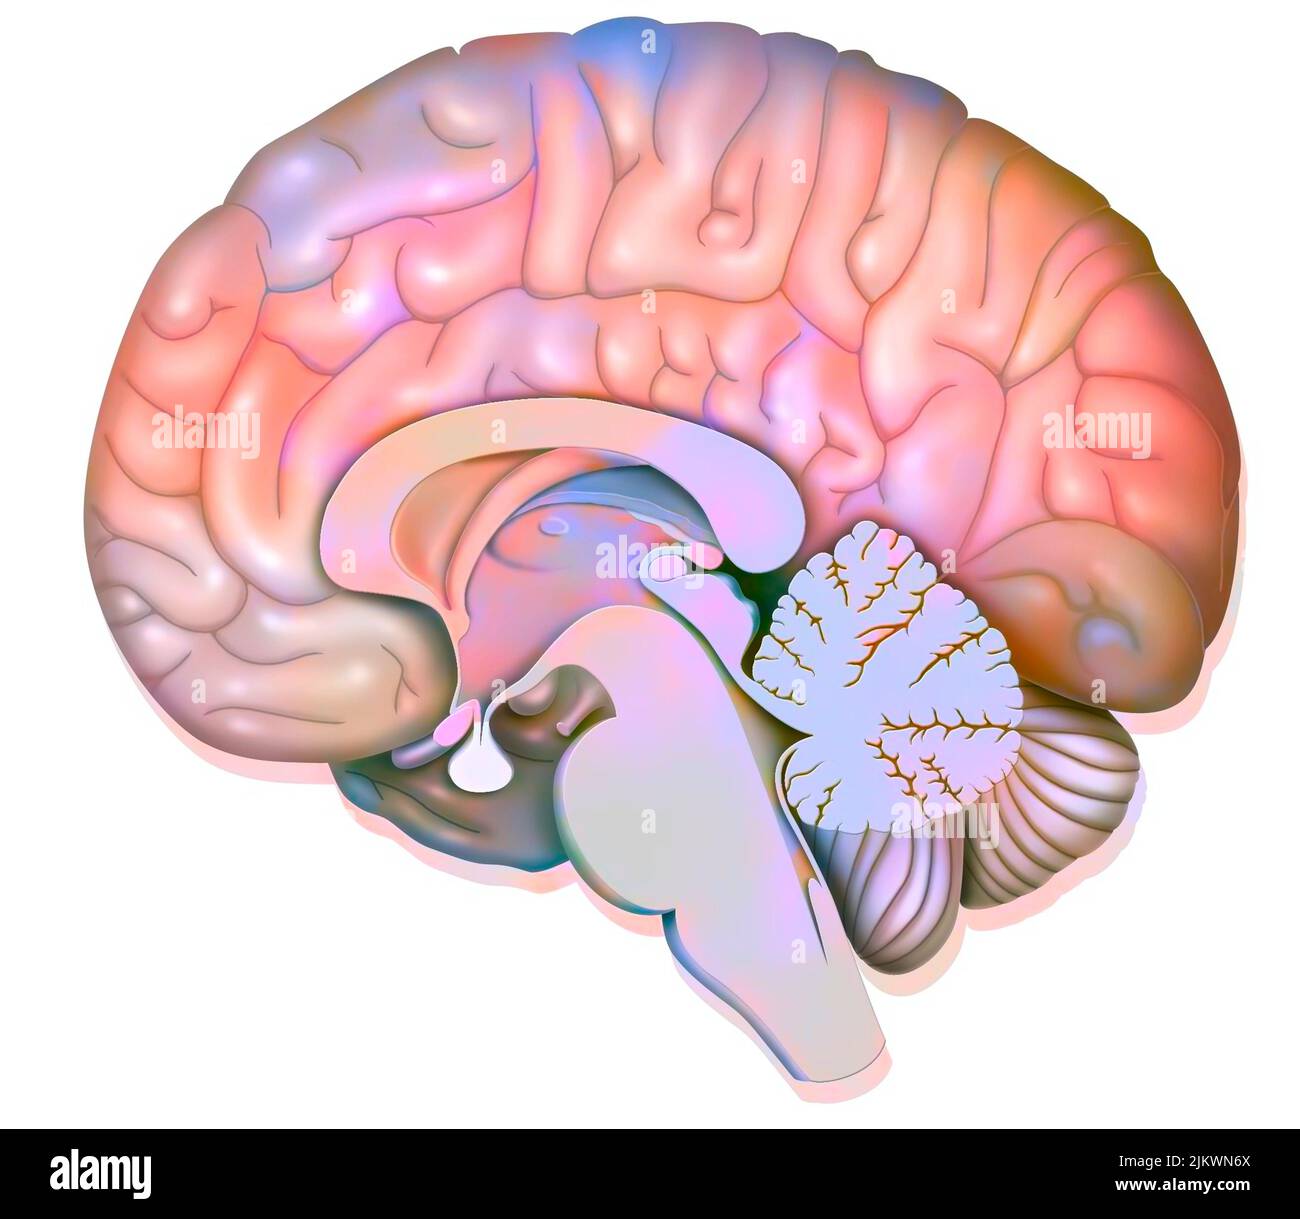 Sección sagital media del cerebro humano que muestra el hipotálamo. Foto de stock